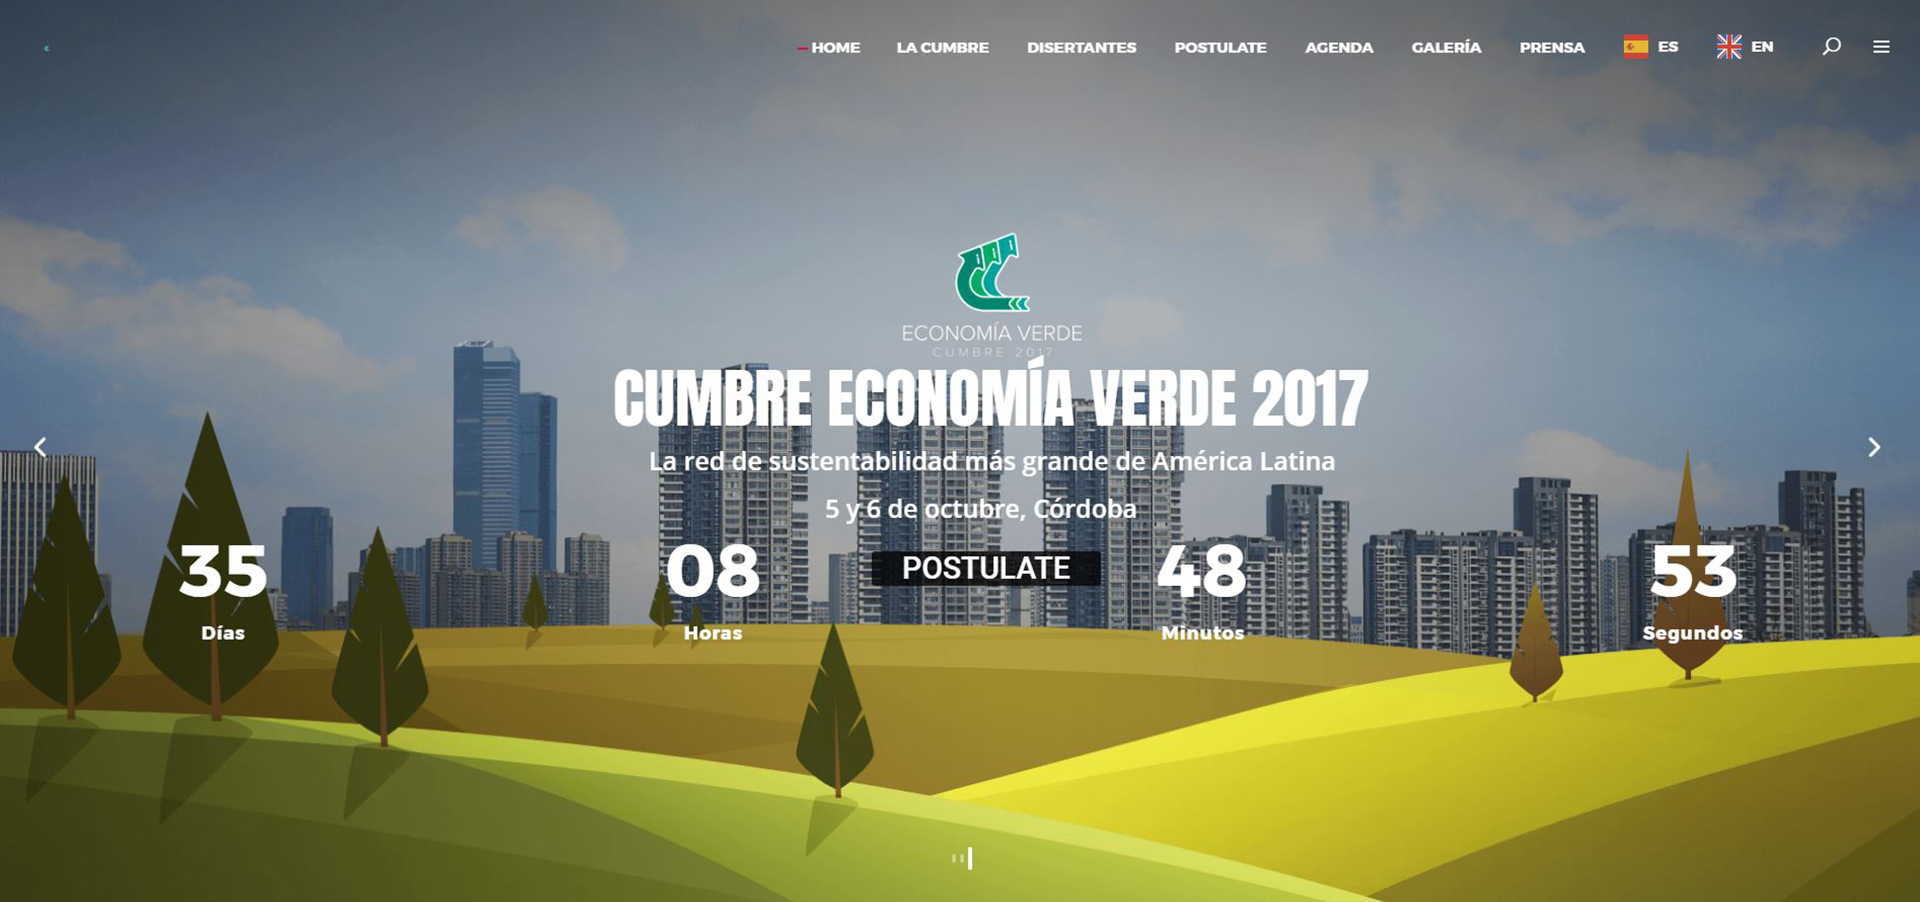 Resultado de imagen para cumbre de economia verde cordoba